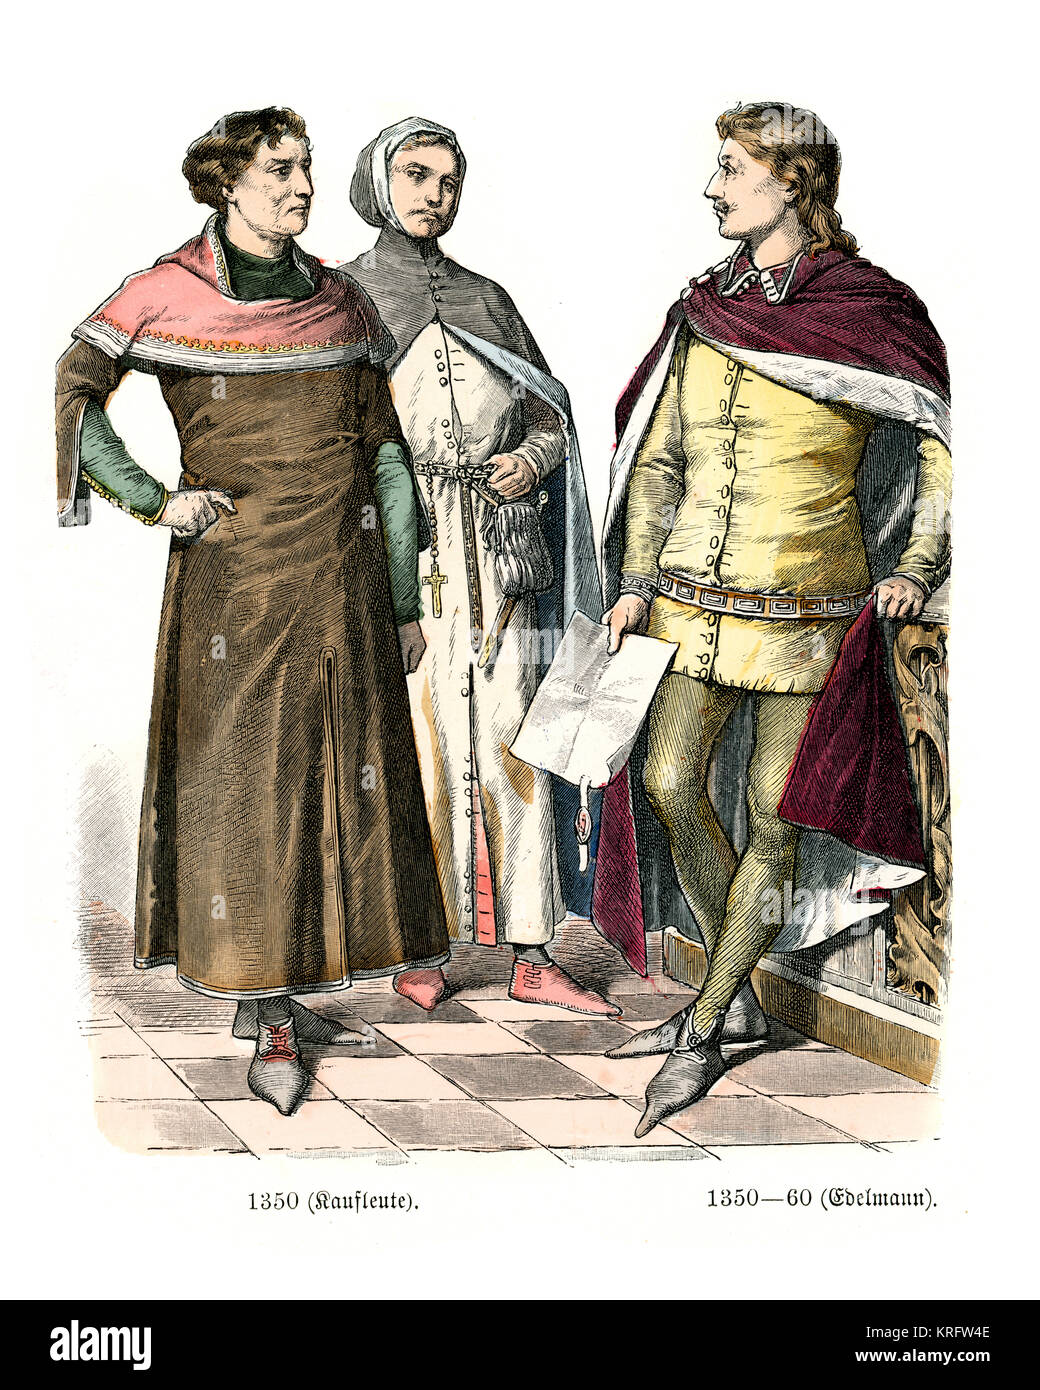 310 ideas de Moda medieval hombres  moda medieval, moda, ropa medieval